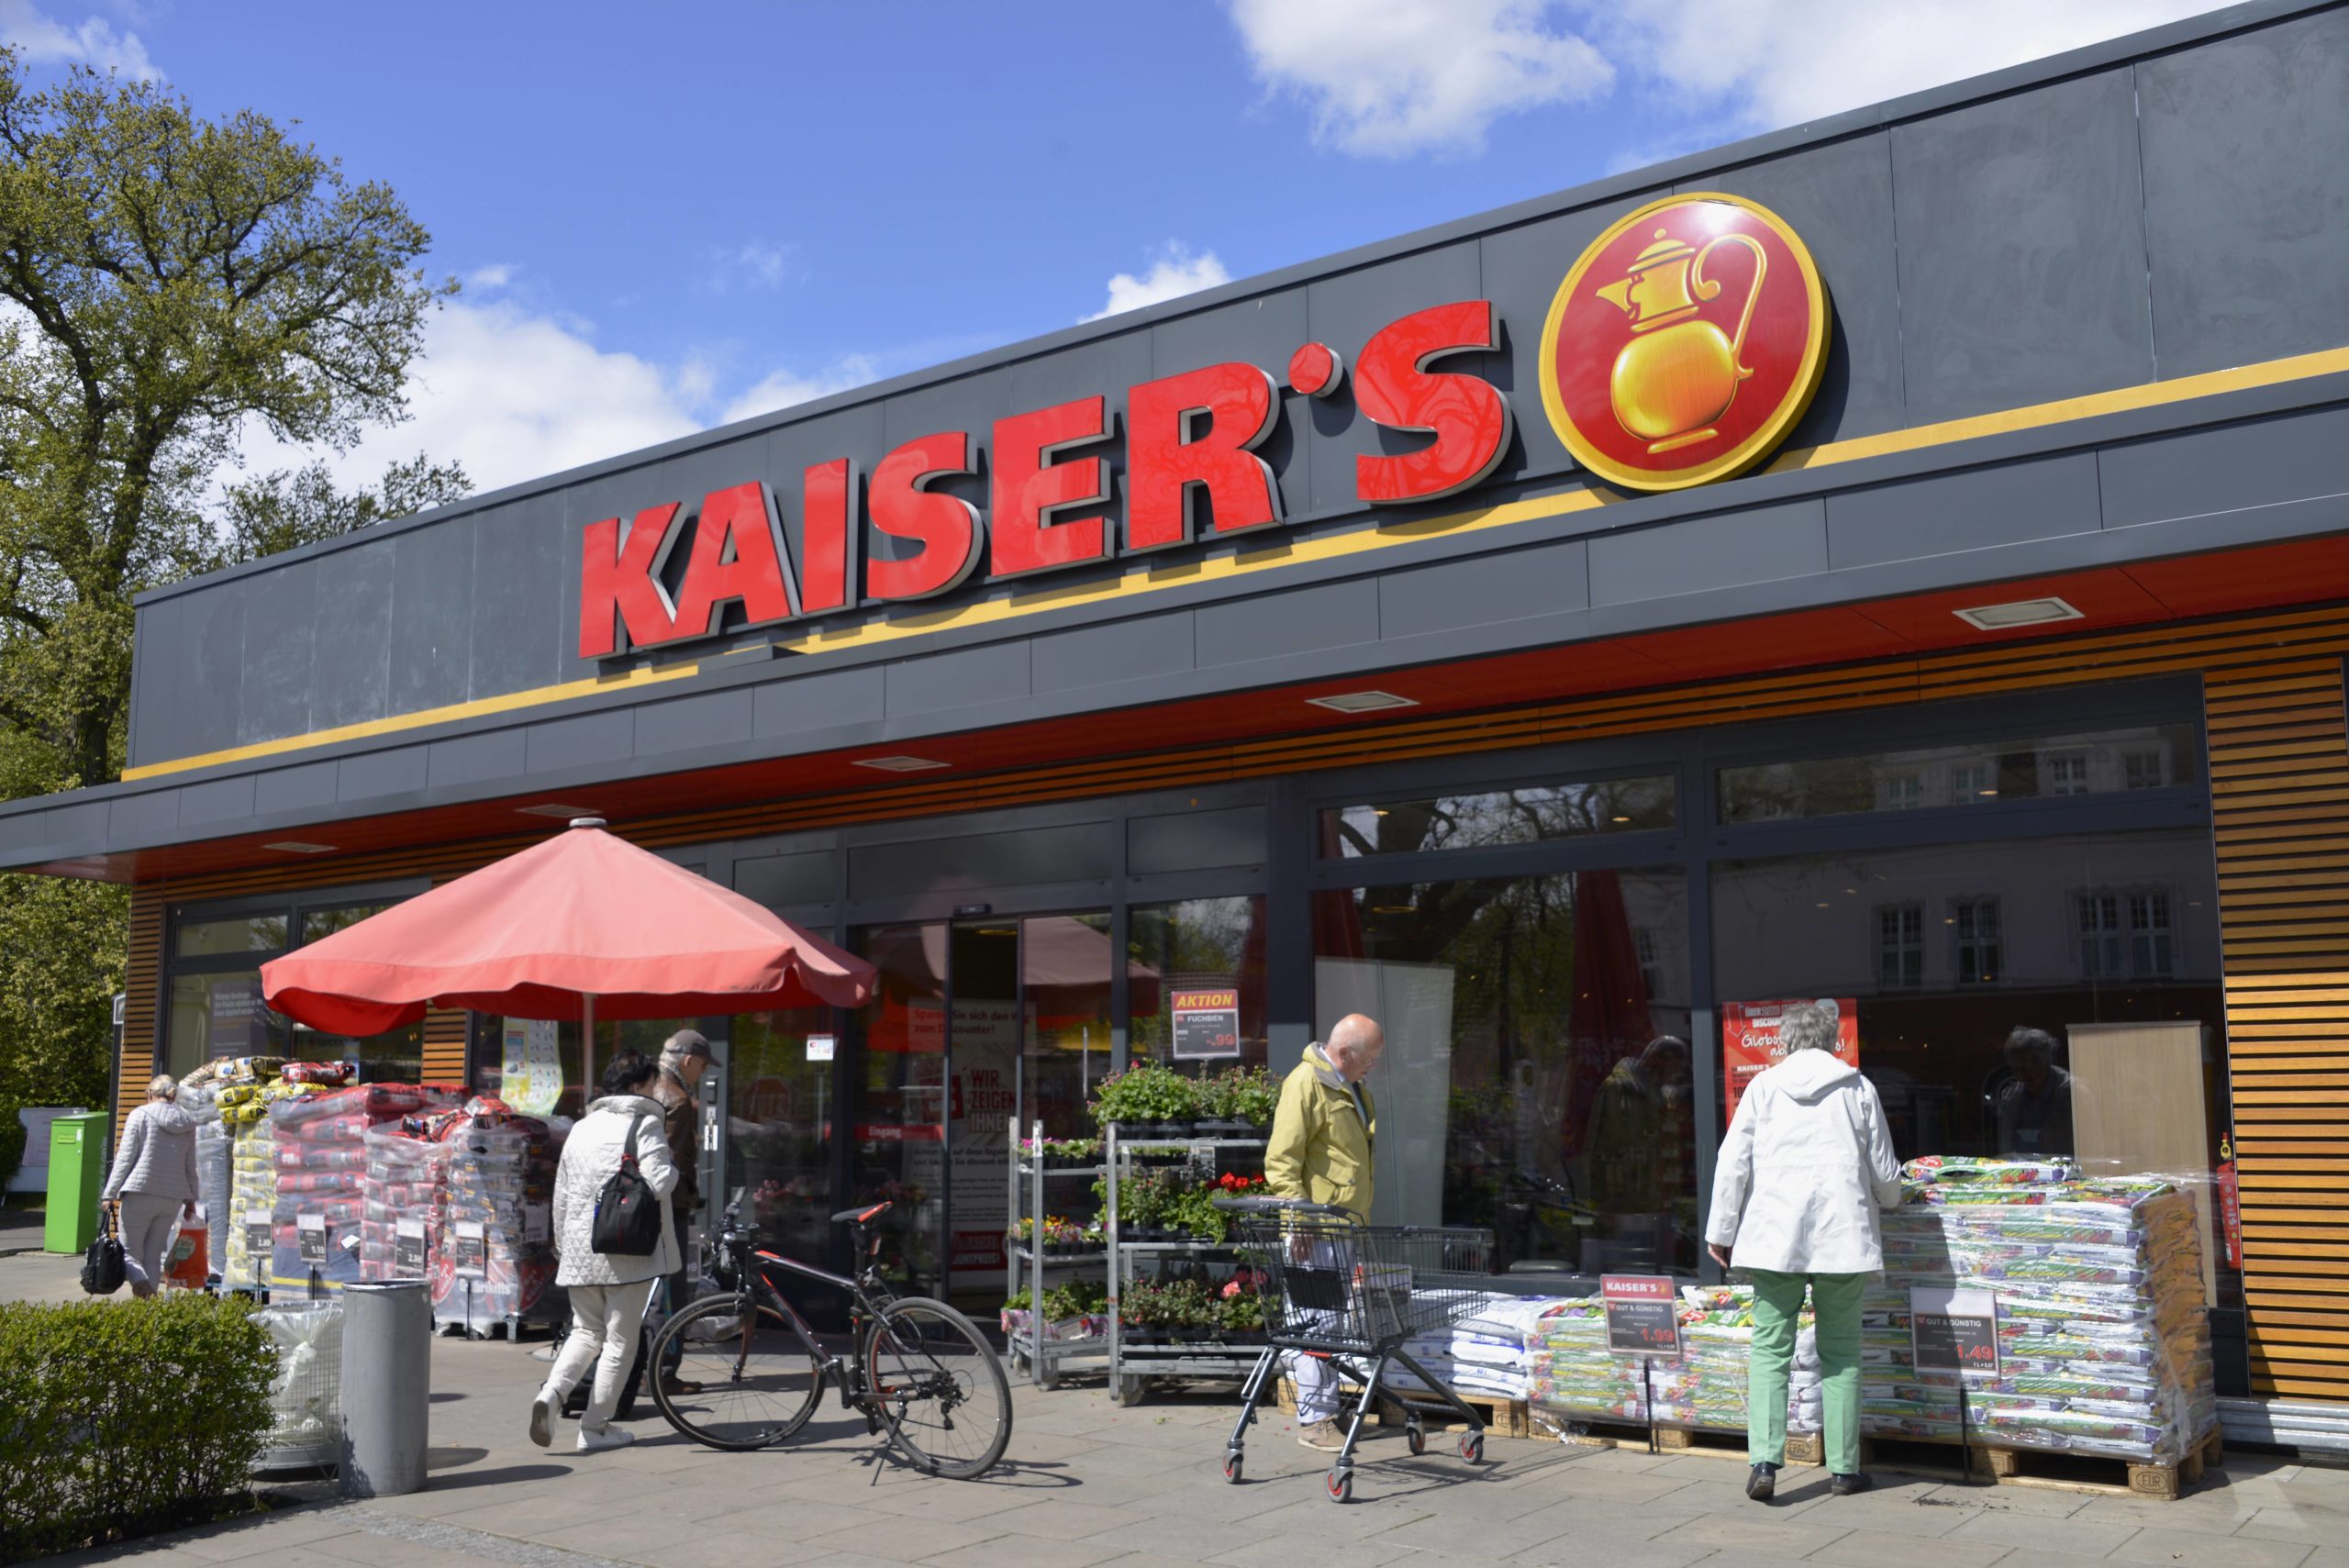 Berlin und die Kaiser: Eine Filiale der abgewickelten Supermarktkette Kaiser's. Foto: Imago/Schöning